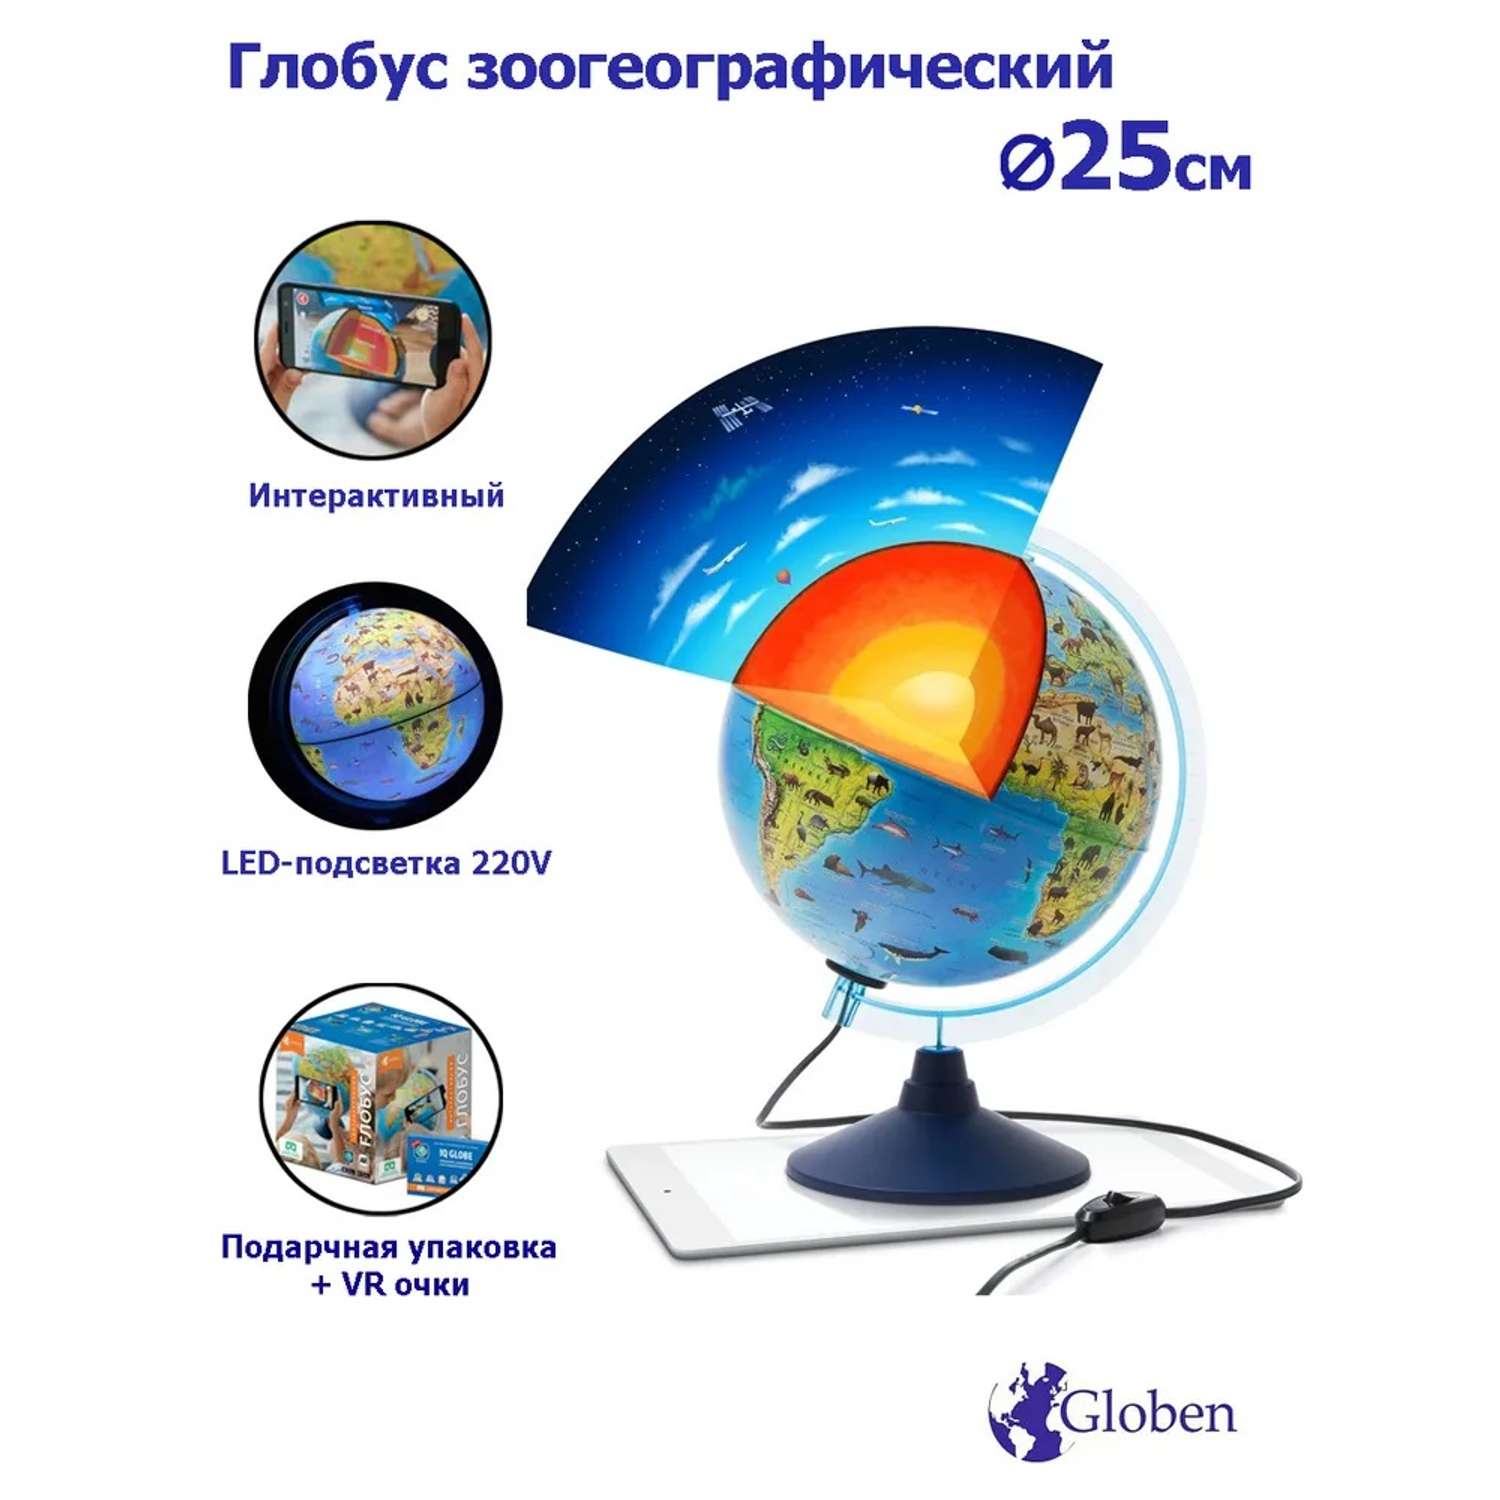 Интерактивный глобус Globen Зоогеографический детский 25 см с LED-подсветкой VR очки - фото 1